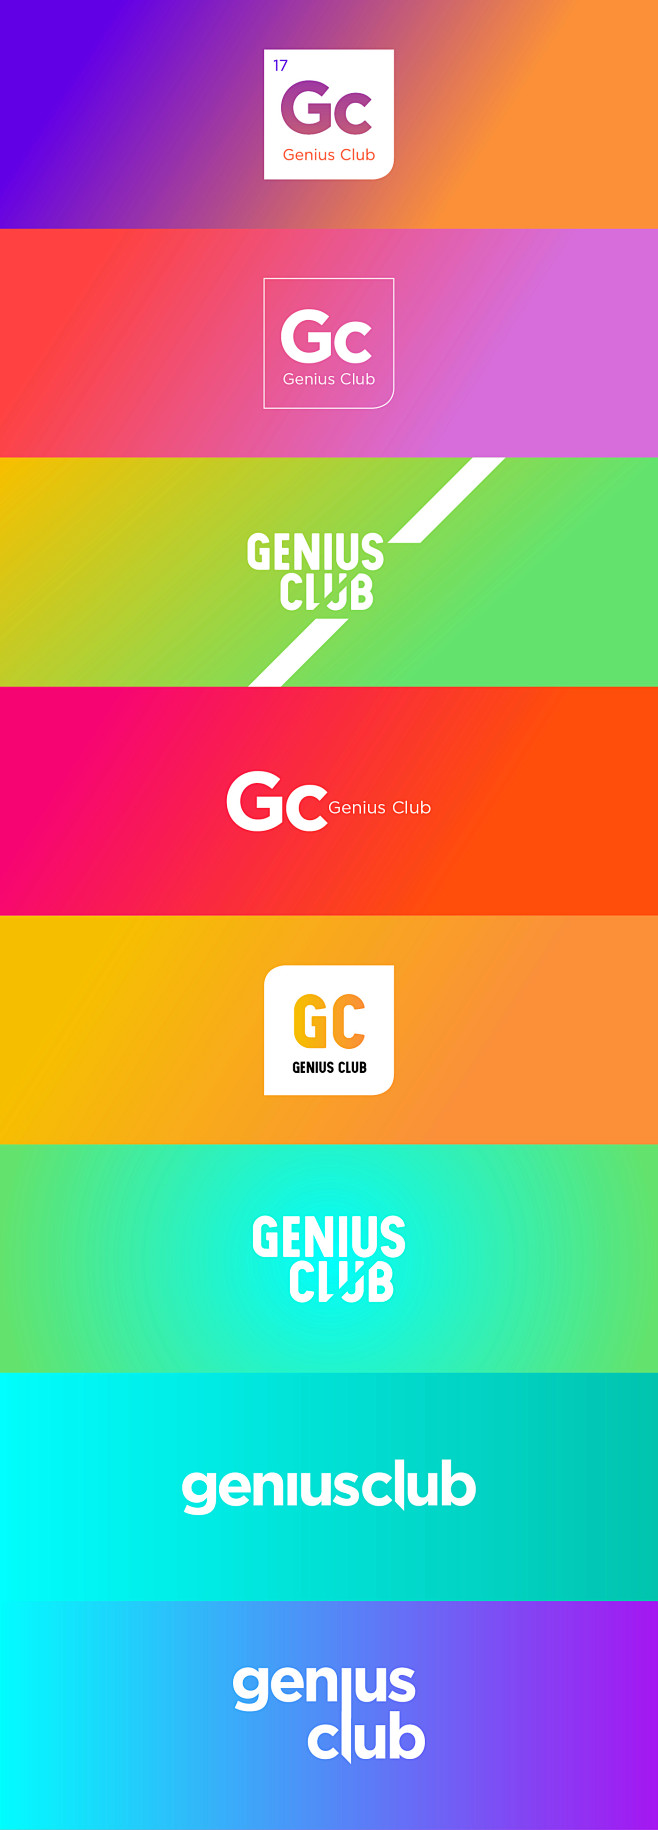 Genius Club on Behan...